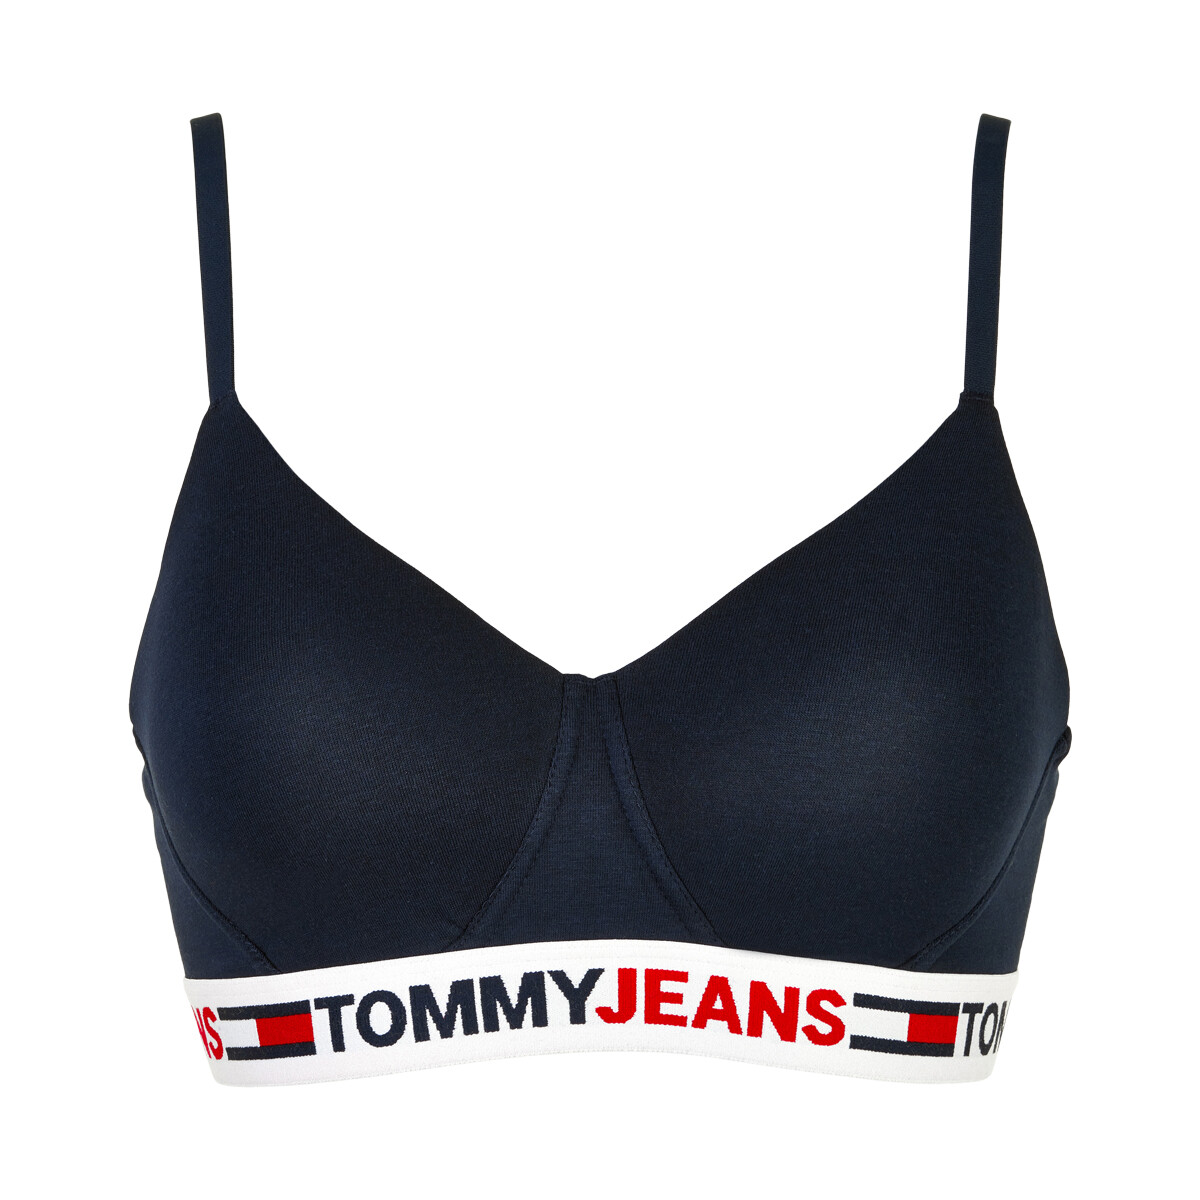 Tommy Hilfiger Lingeri Bralette Bikini Top, Farve: Sort, Størrelse: L, Dame